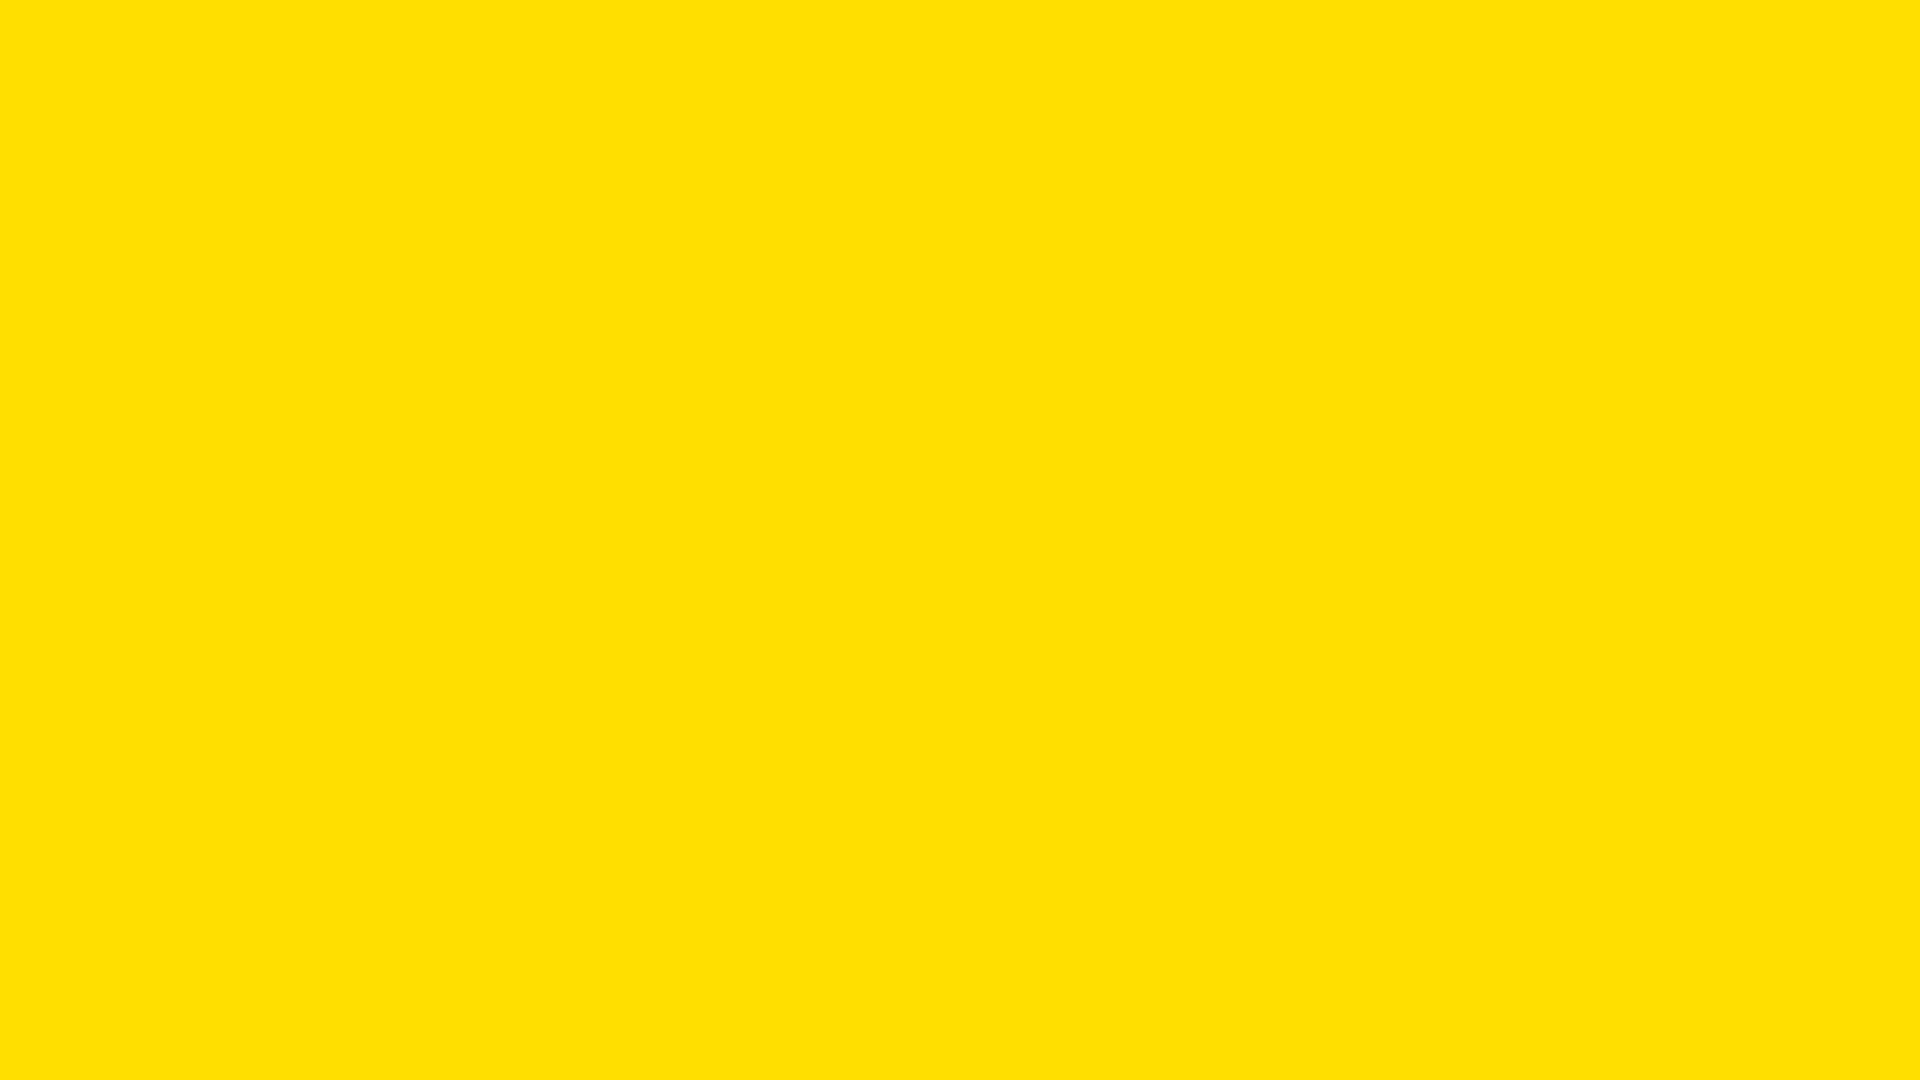 Hình nền màu vàng: Với tông màu ấm áp và tươi sáng, hình nền màu vàng sẽ tạo ra một không gian làm việc hoàn hảo cho bạn. Bức ảnh liên quan sẽ cho bạn cảm giác thoải mái và sẽ giúp bạn tập trung vào công việc của mình một cách hiệu quả hơn.